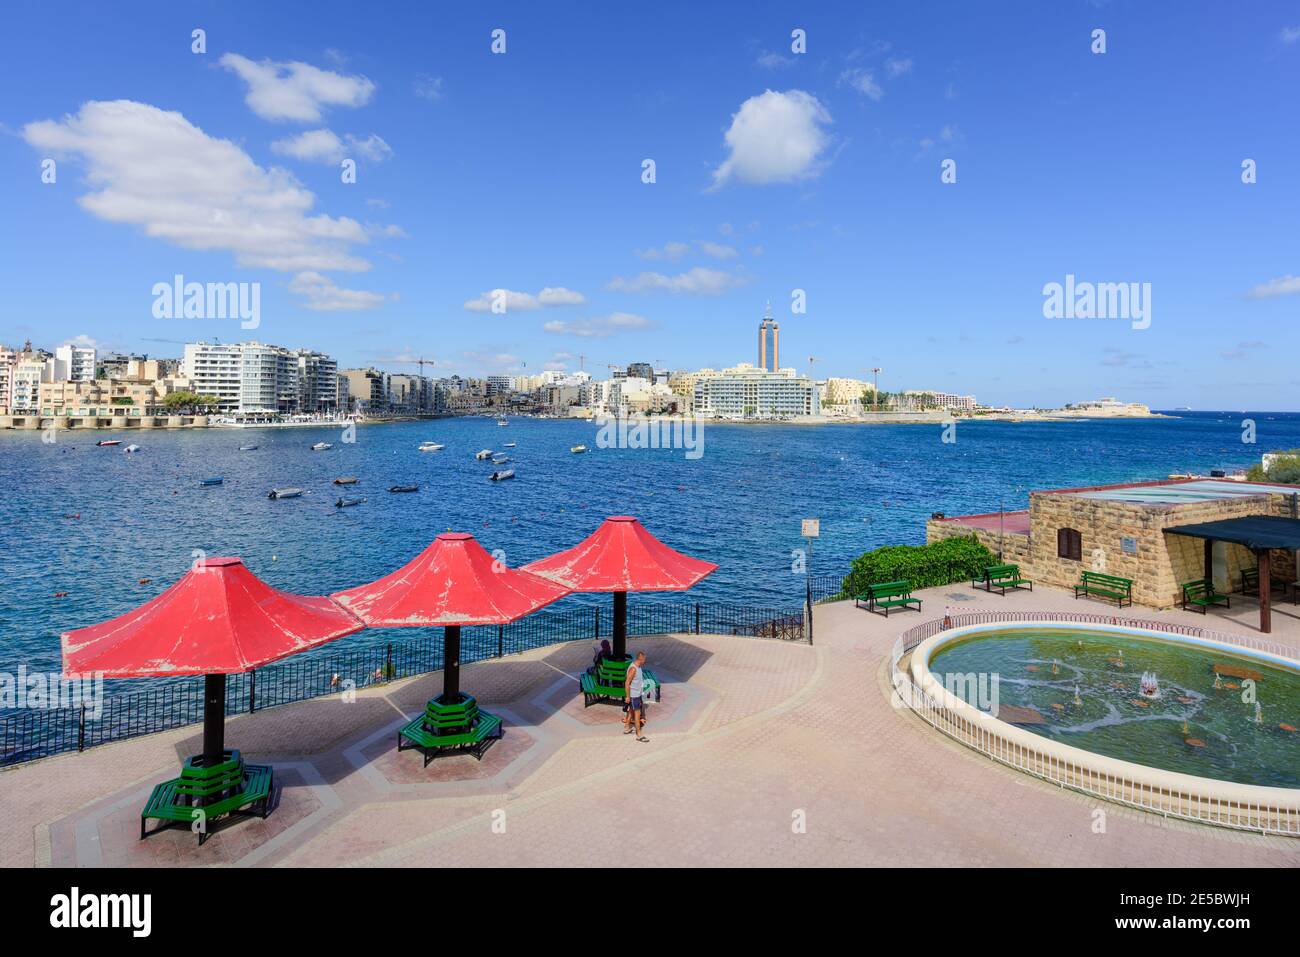 Destination de vacances populaire Sliema front de mer de l'autre côté de la baie d'exilés vers St Julian's Bay et St Julians Malte Banque D'Images